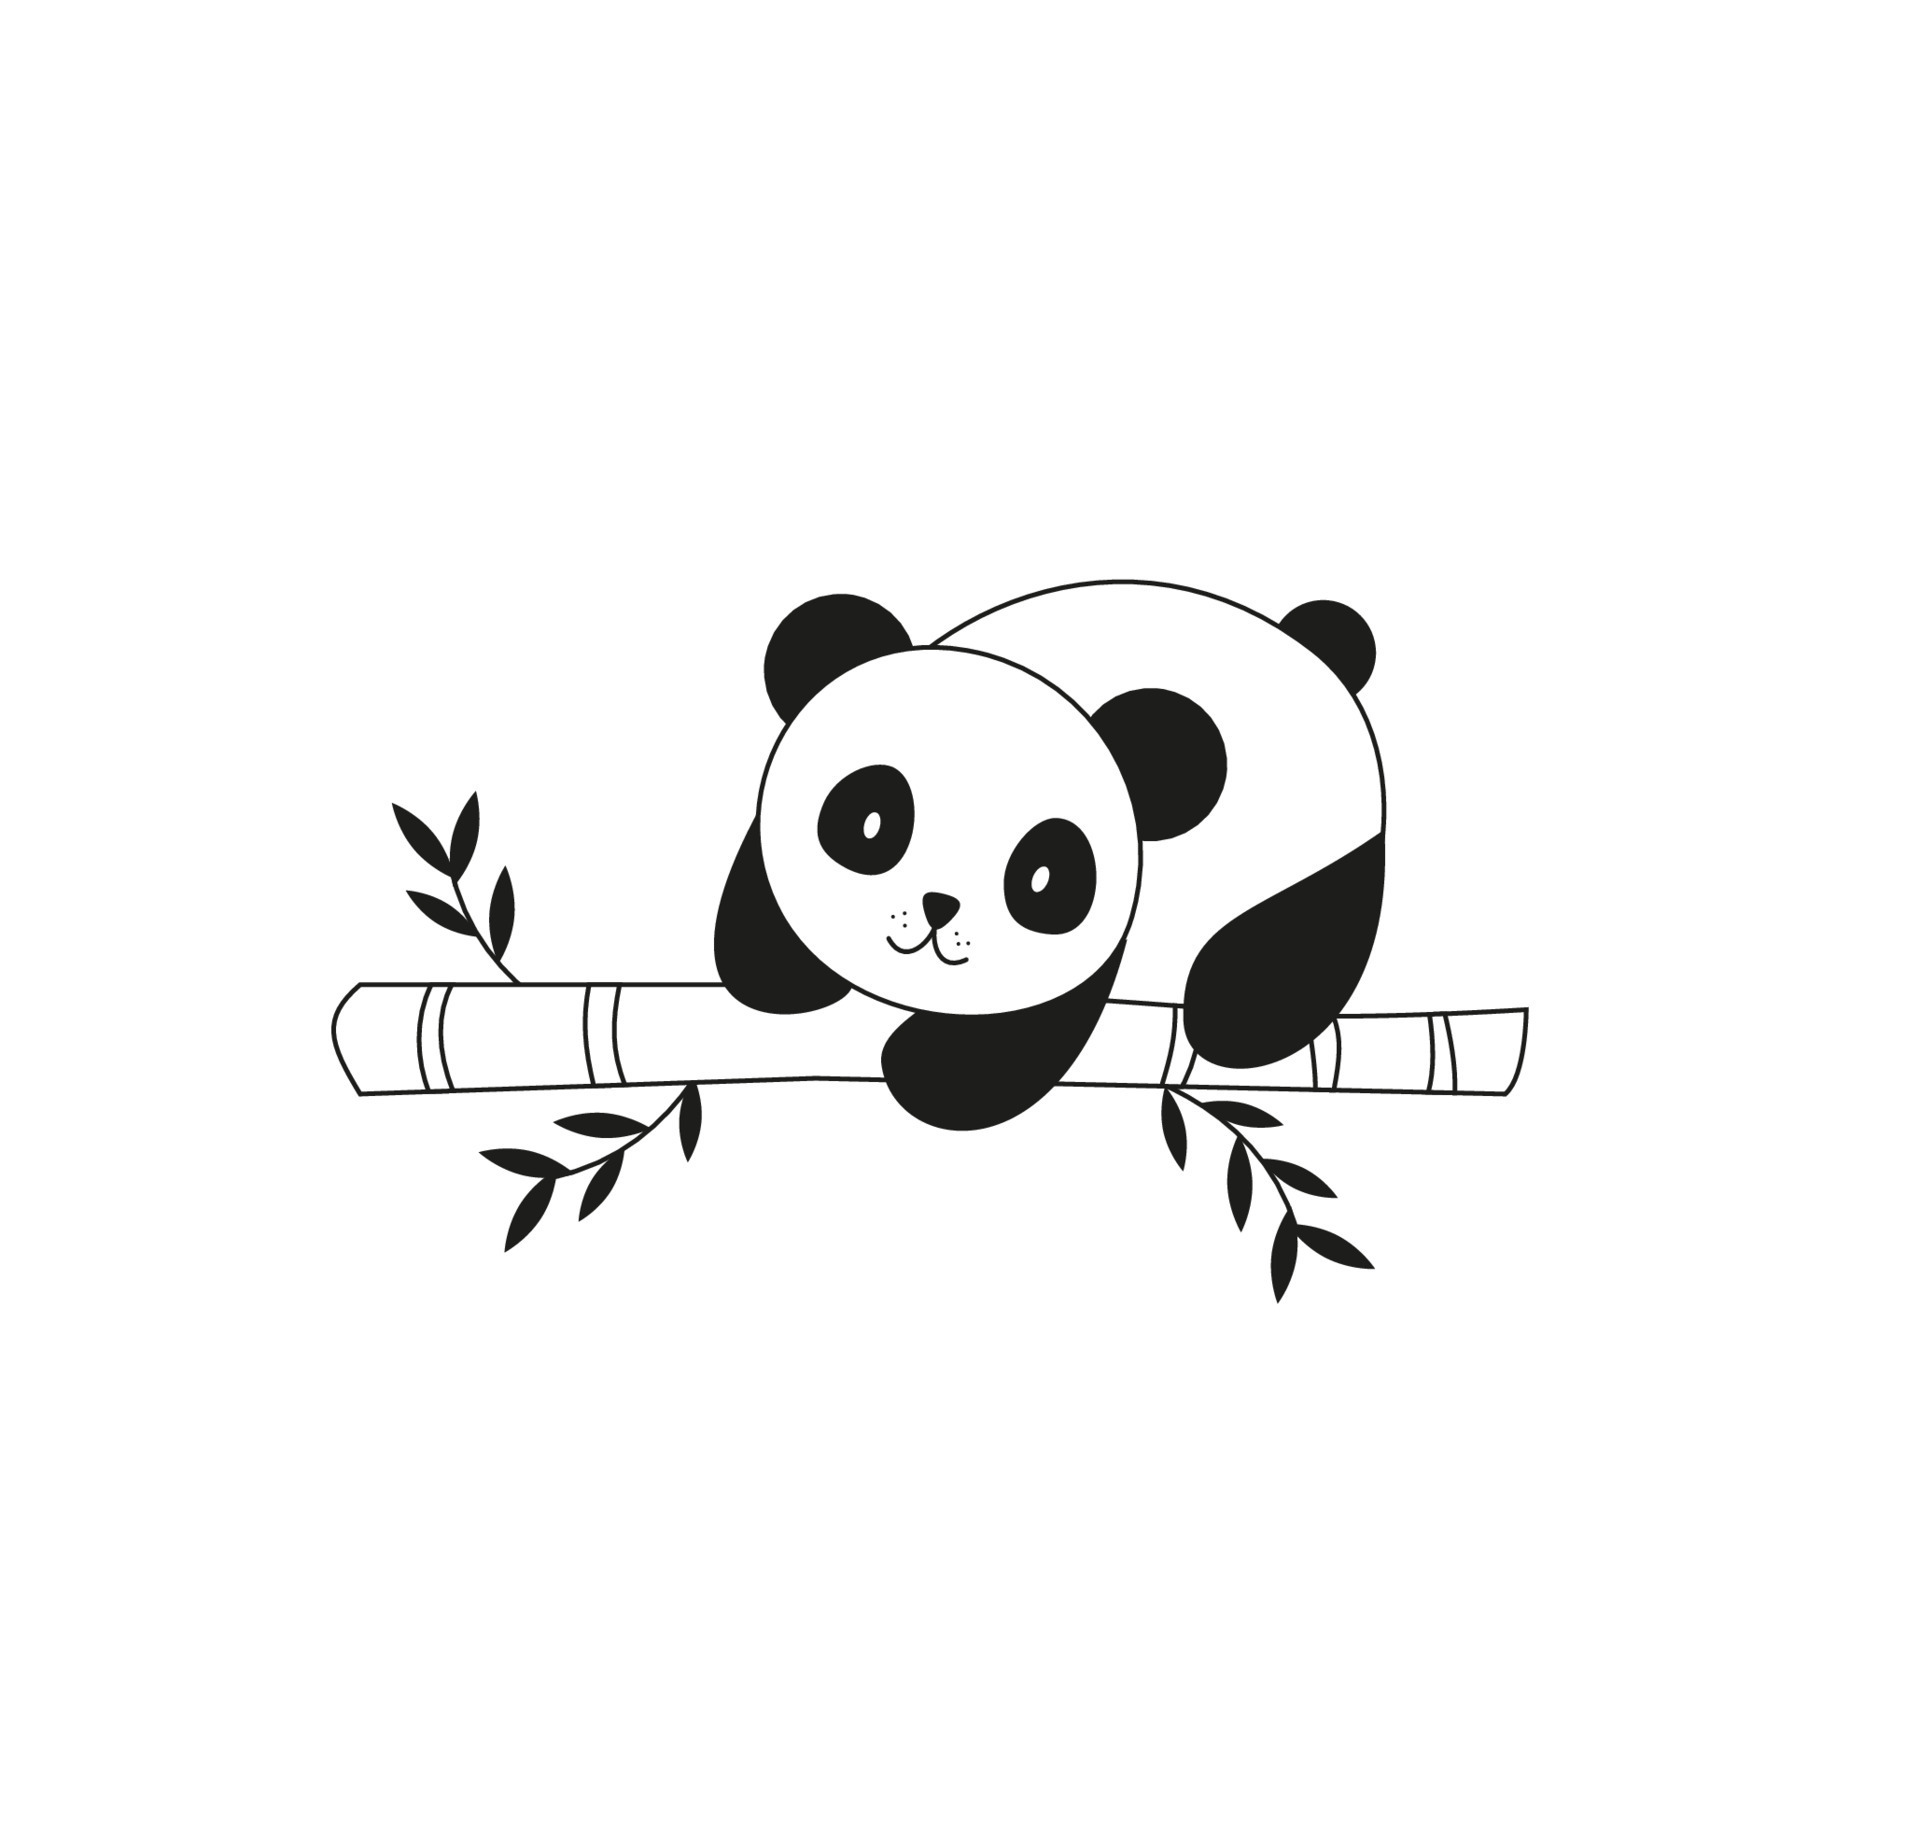 panda sentado e comendo bambu com um toque de aquarela desenhado à mão  desenho ilustração vetorial de tintas 2492491 Vetor no Vecteezy